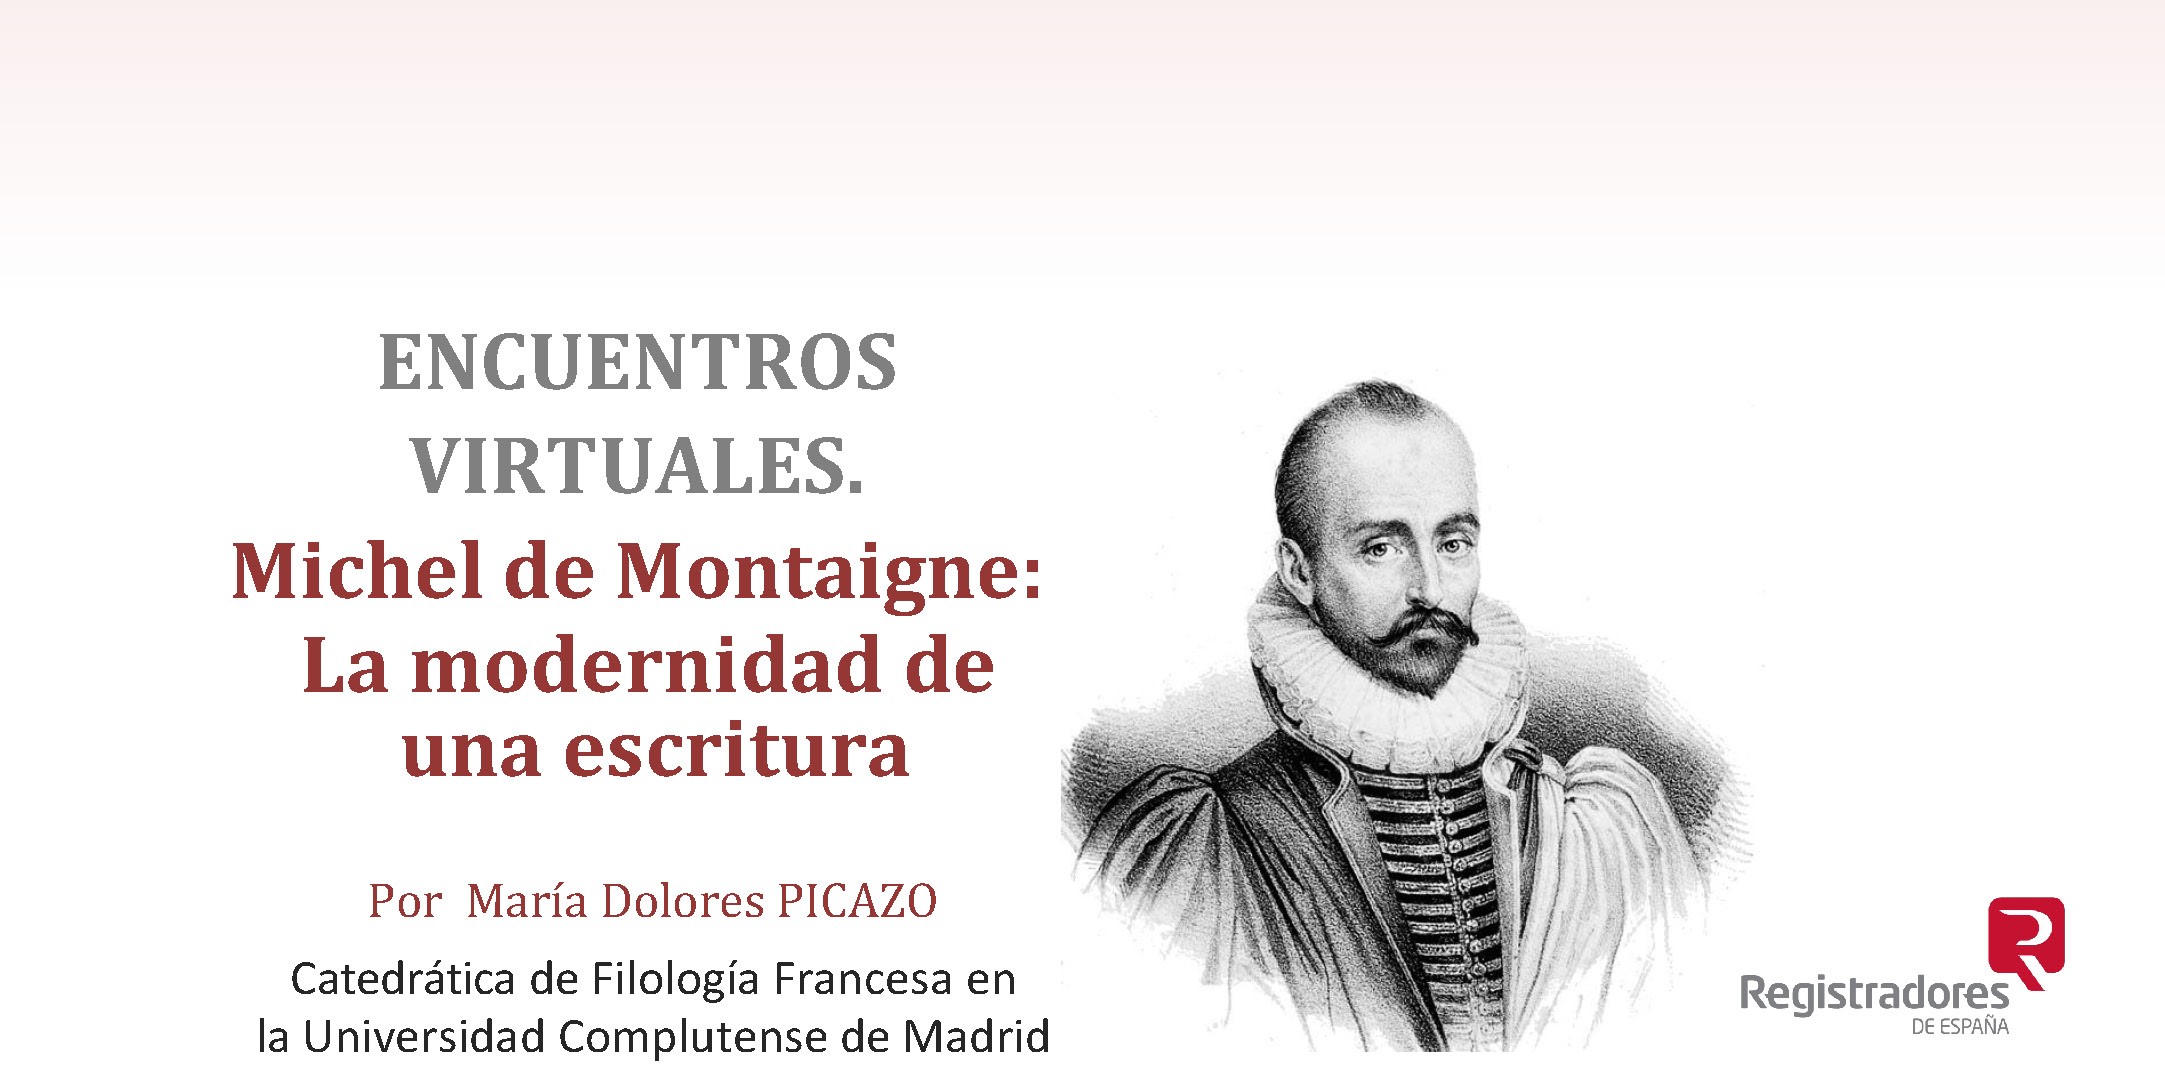 Encuentros virtuales del Colegio de Registradores: Michel de Montaigne: La modernidad de una escritura. Con María Dolores Picazo.